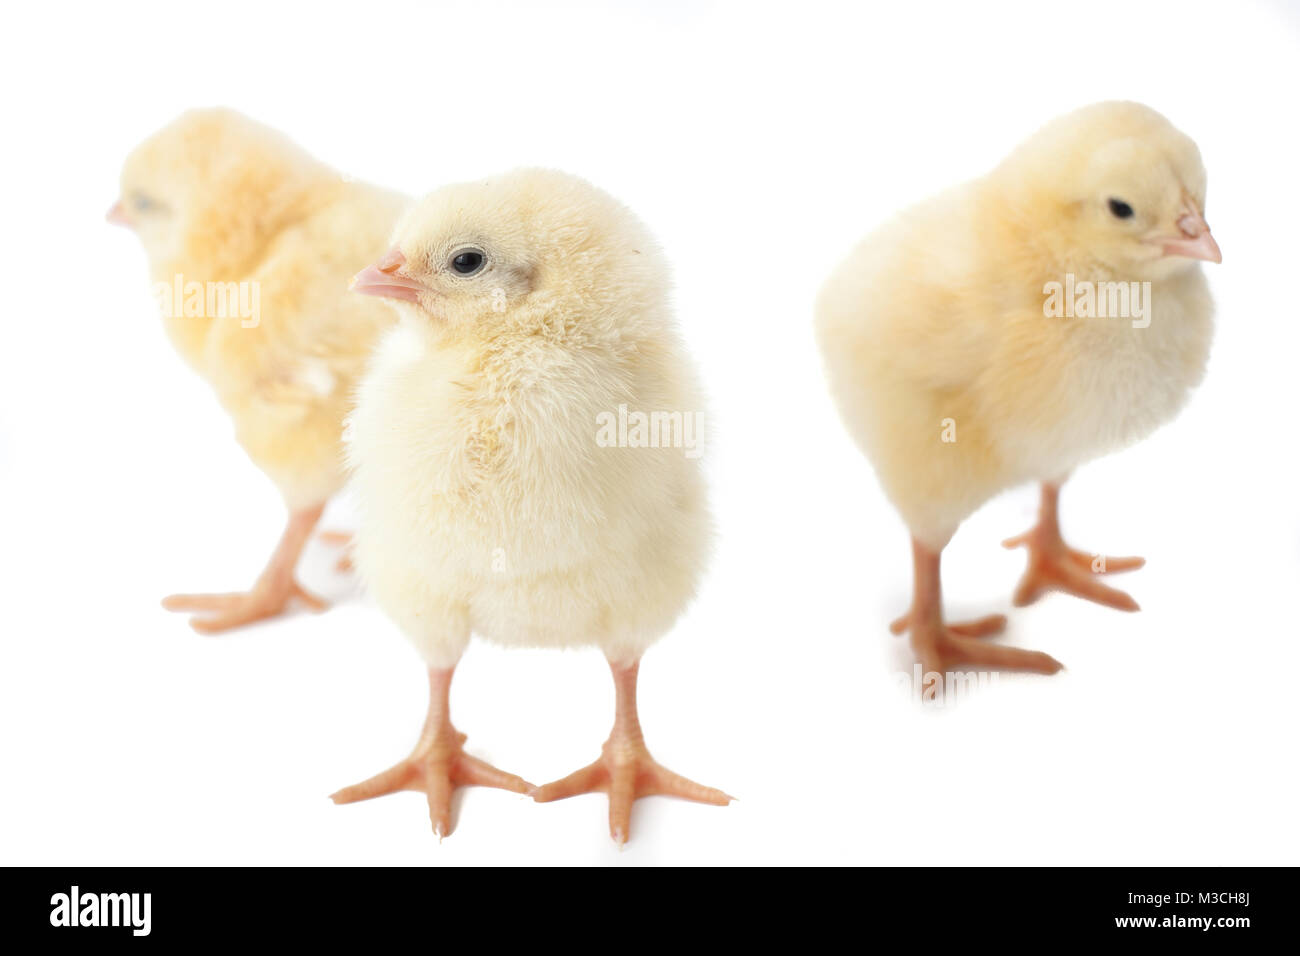 Les petits poulets de Pâques jaune moelleux sur fond blanc Banque D'Images